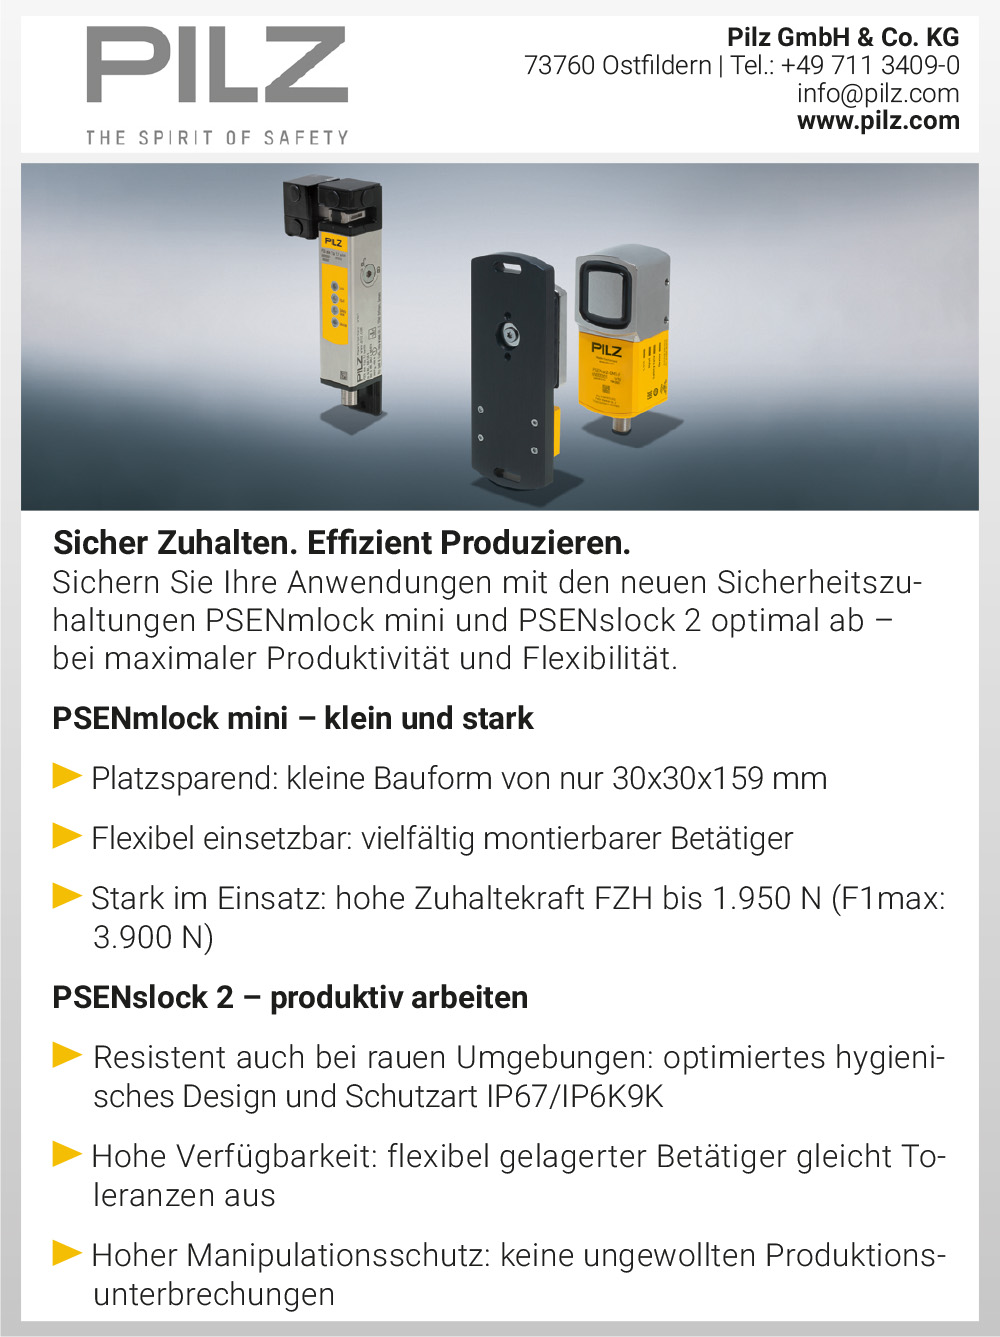 Produktübersicht – Pilz GmbH & Co. KG